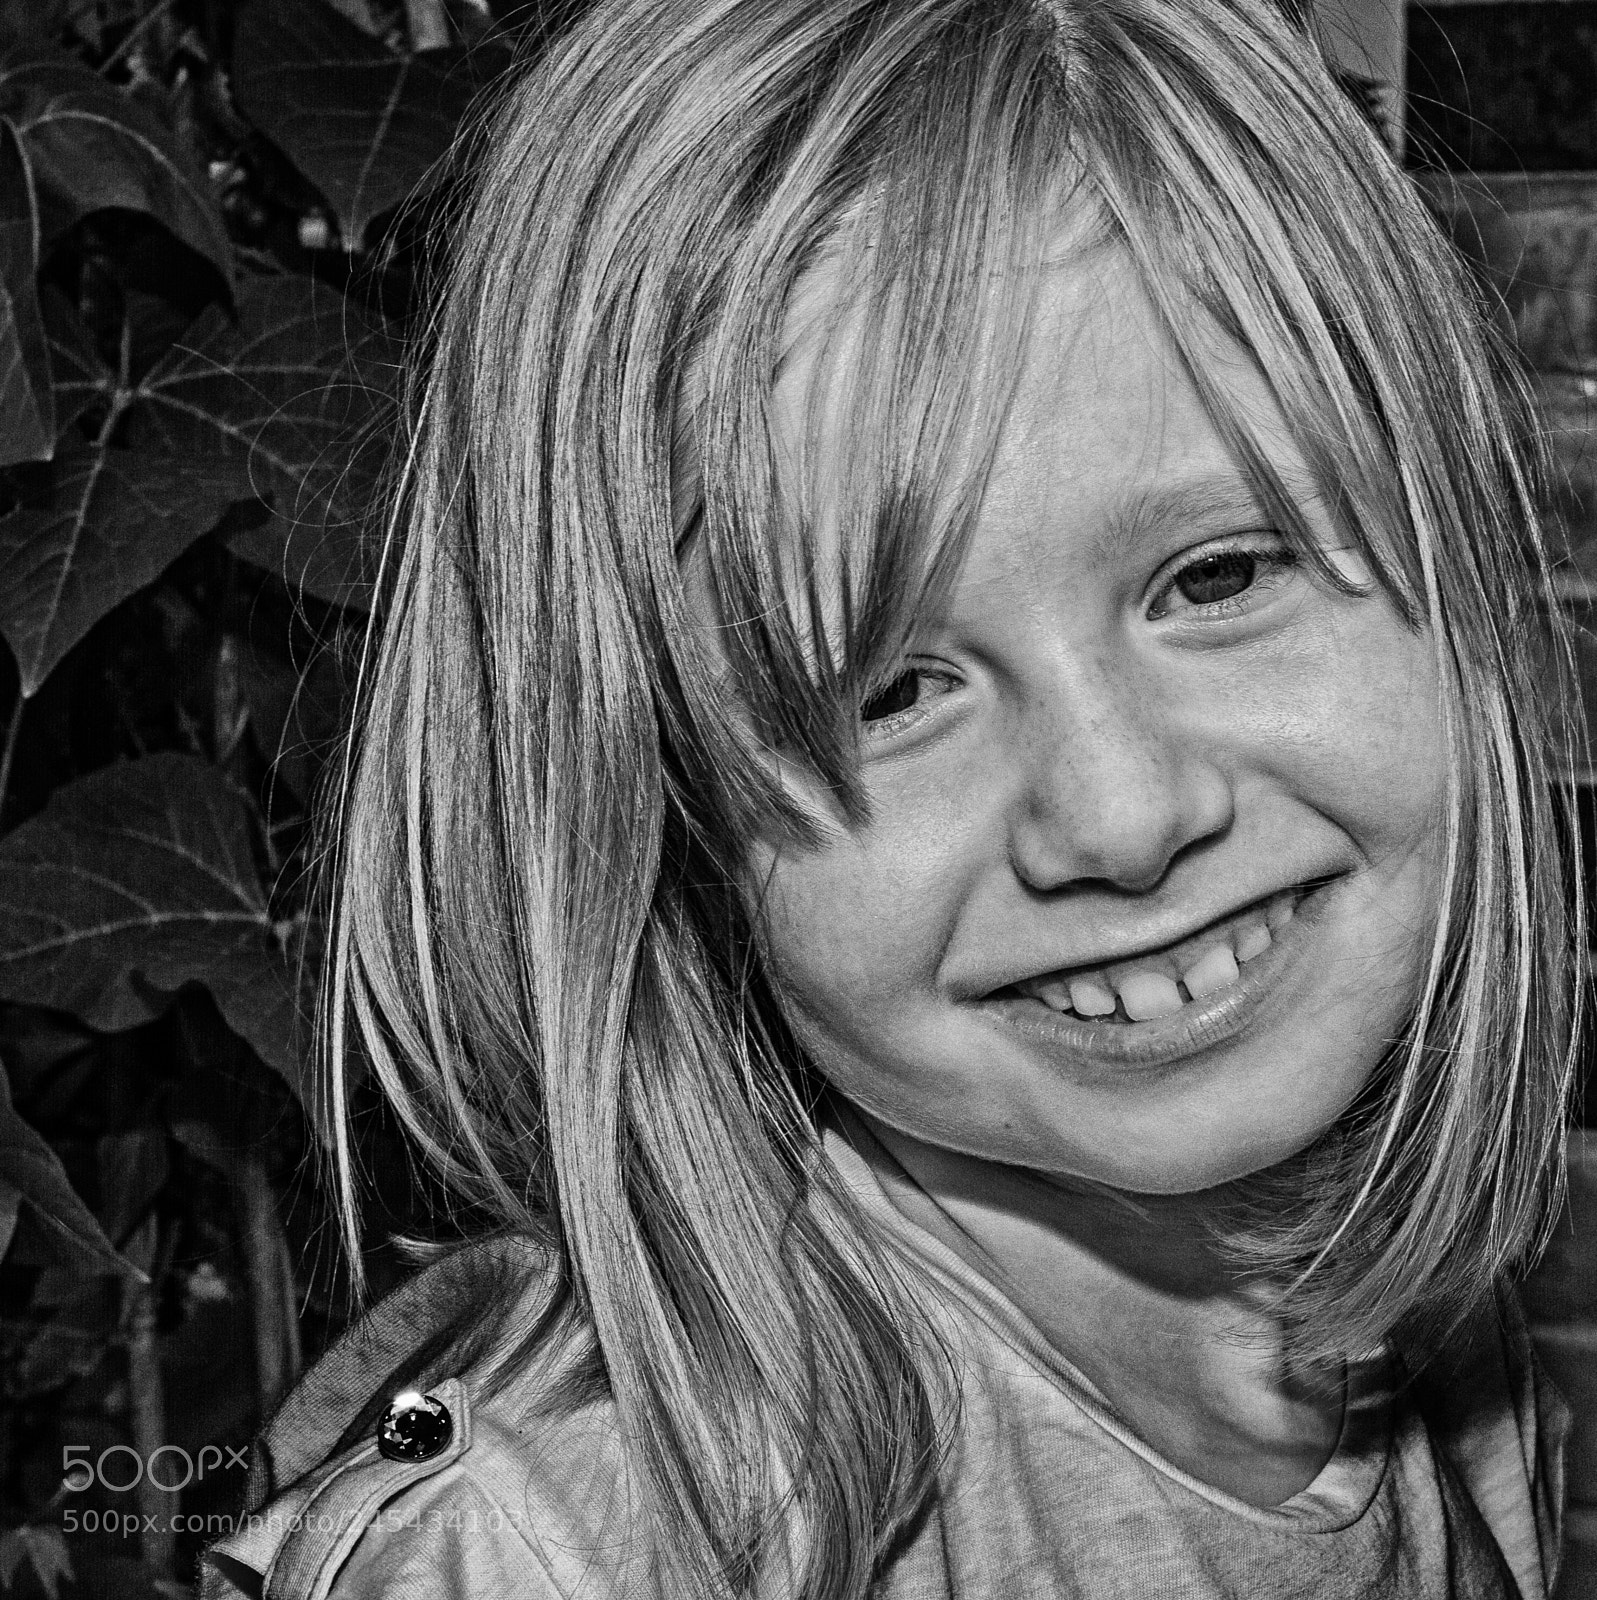 Canon EOS 7D sample photo. Child portrait photography